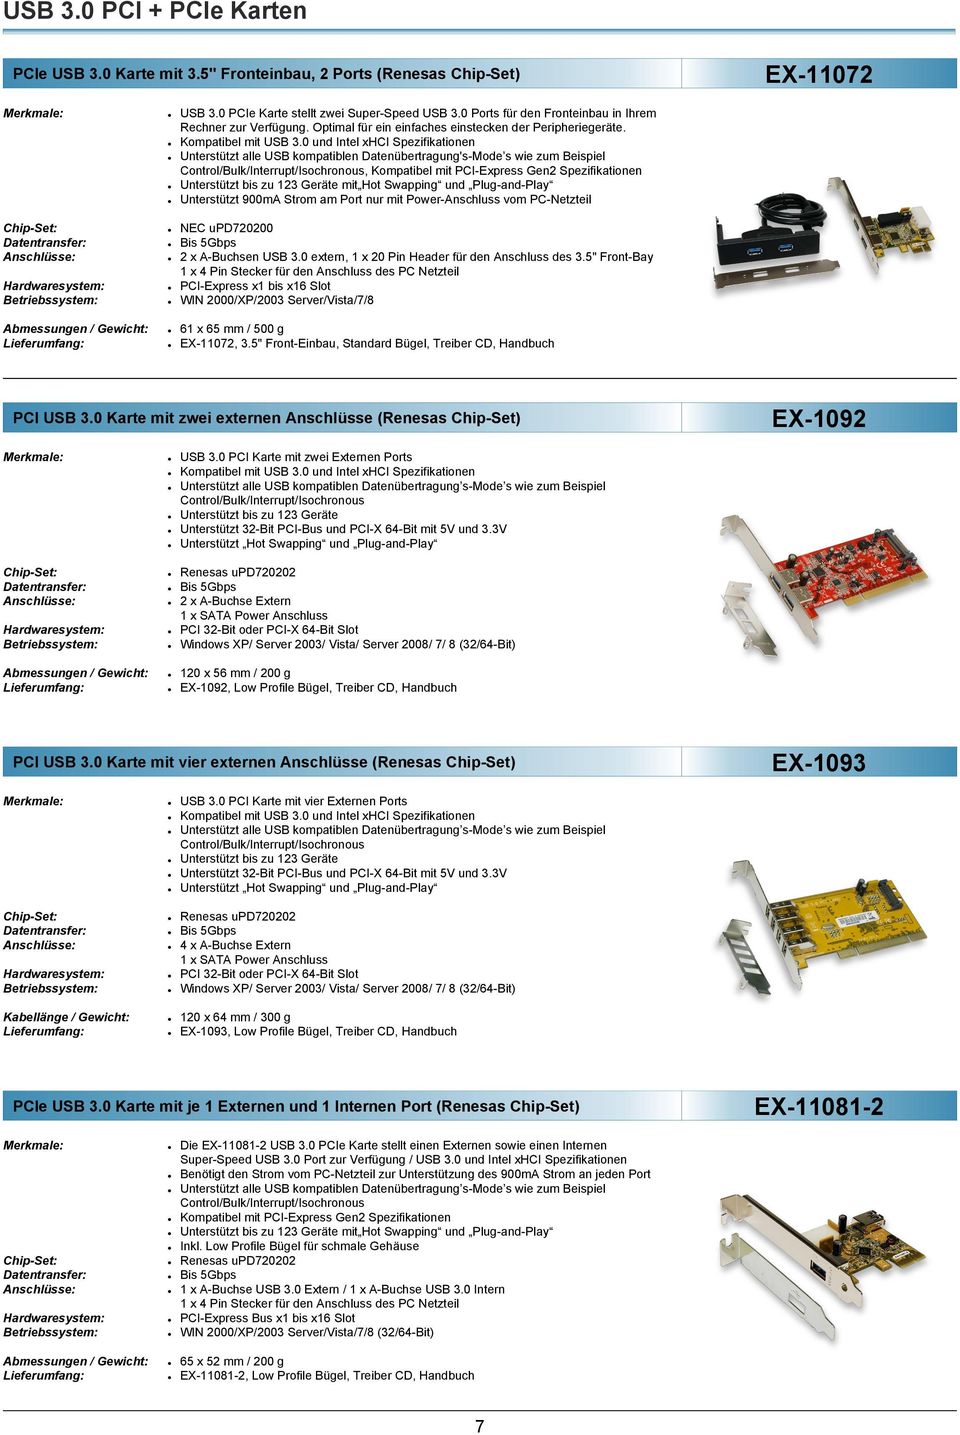 0 und Intel xhci Spezifikationen Unterstützt alle USB kompatiblen Datenübertragung's-Mode s wie zum Beispiel, Kompatibel mit PCI-Express Gen2 Spezifikationen Unterstützt 900mA Strom am Port nur mit